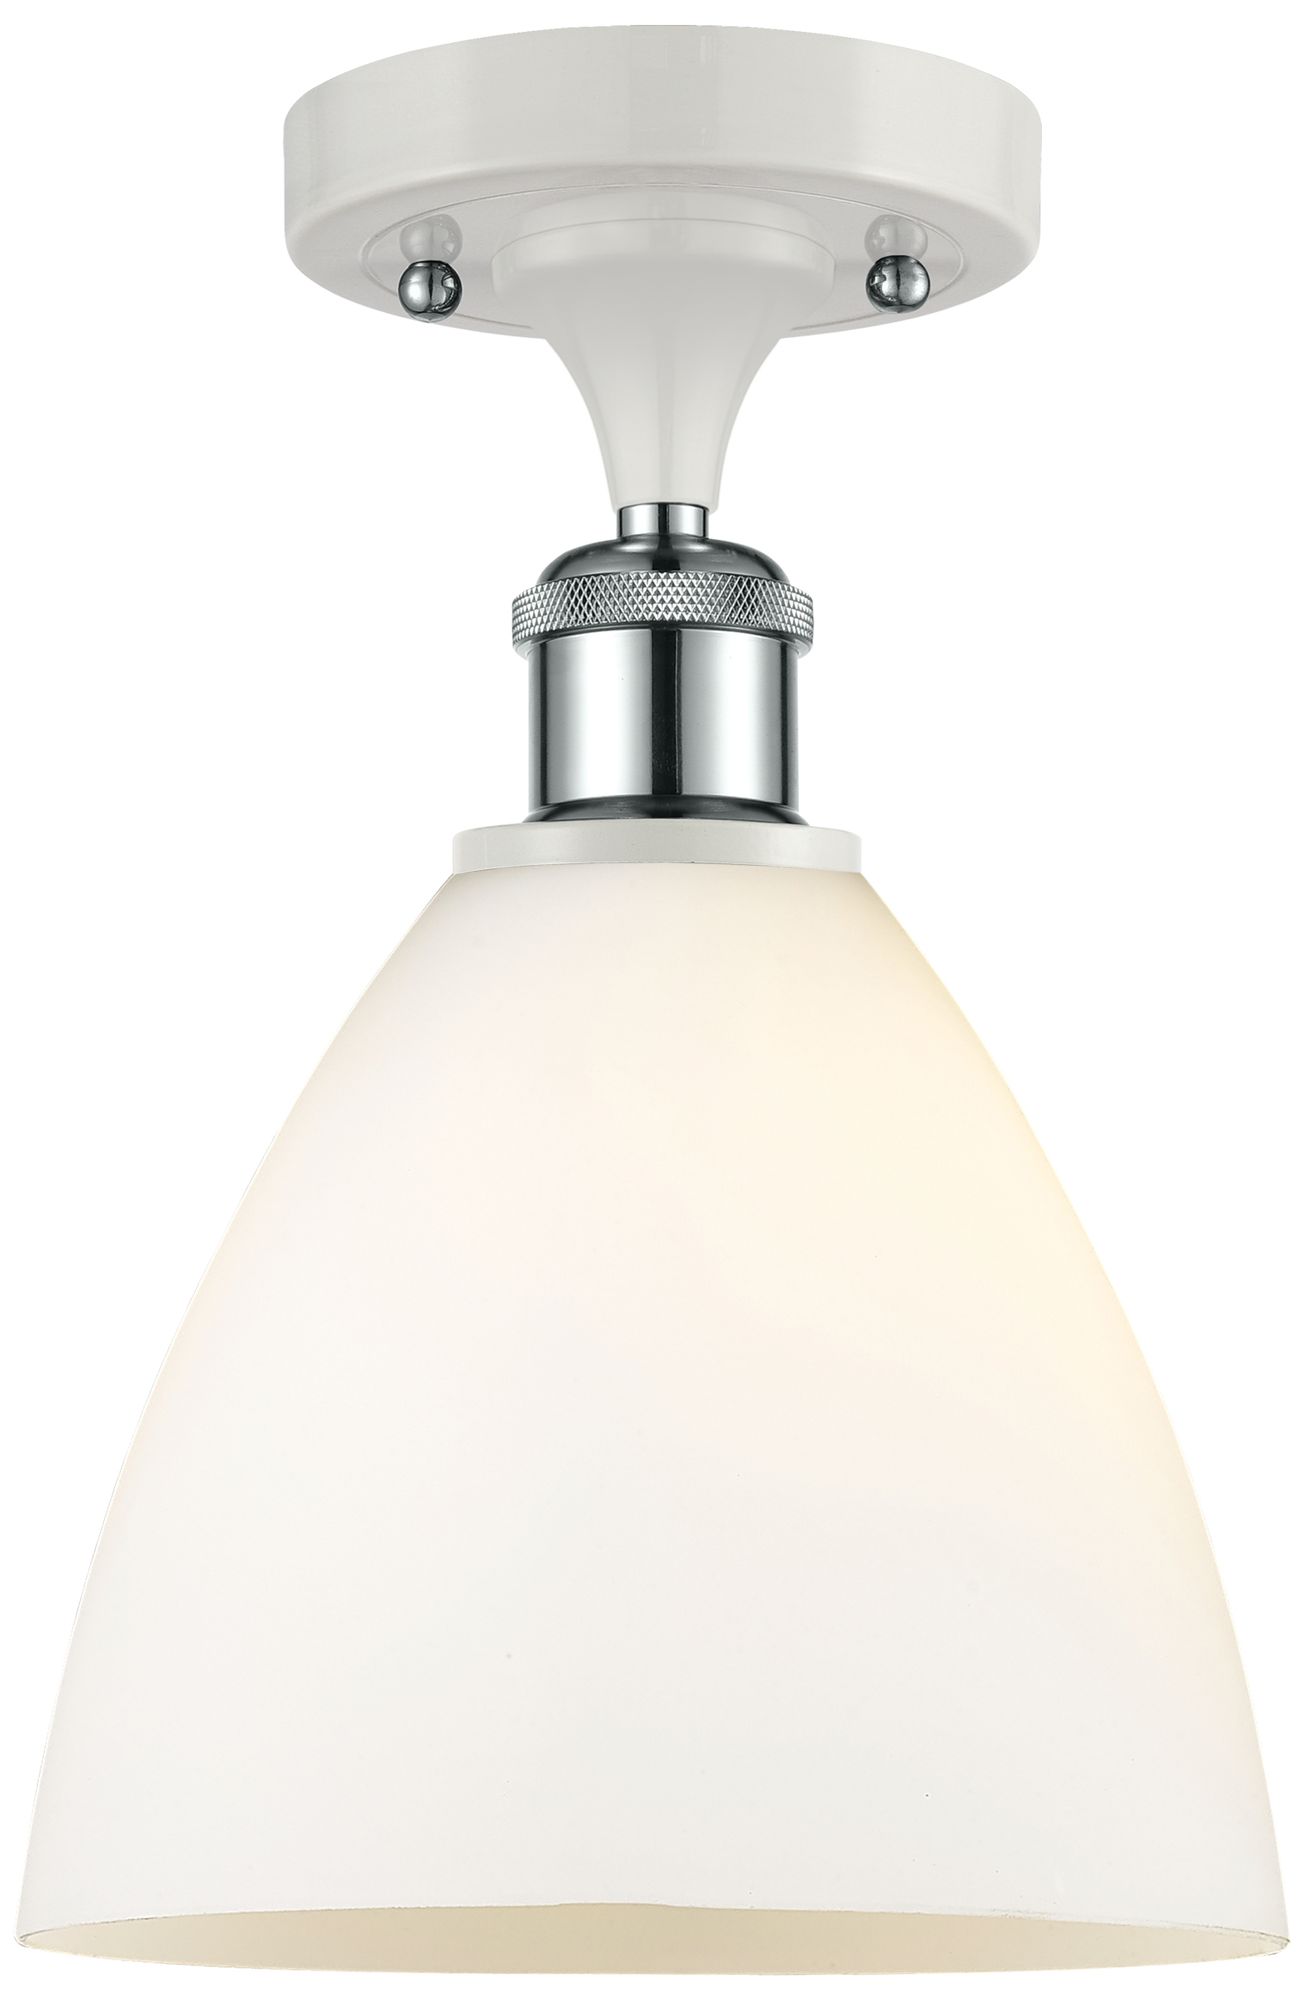 Bristol Glass  8" LED Semi-Flush Mount - White and Chrome - Matte Whit